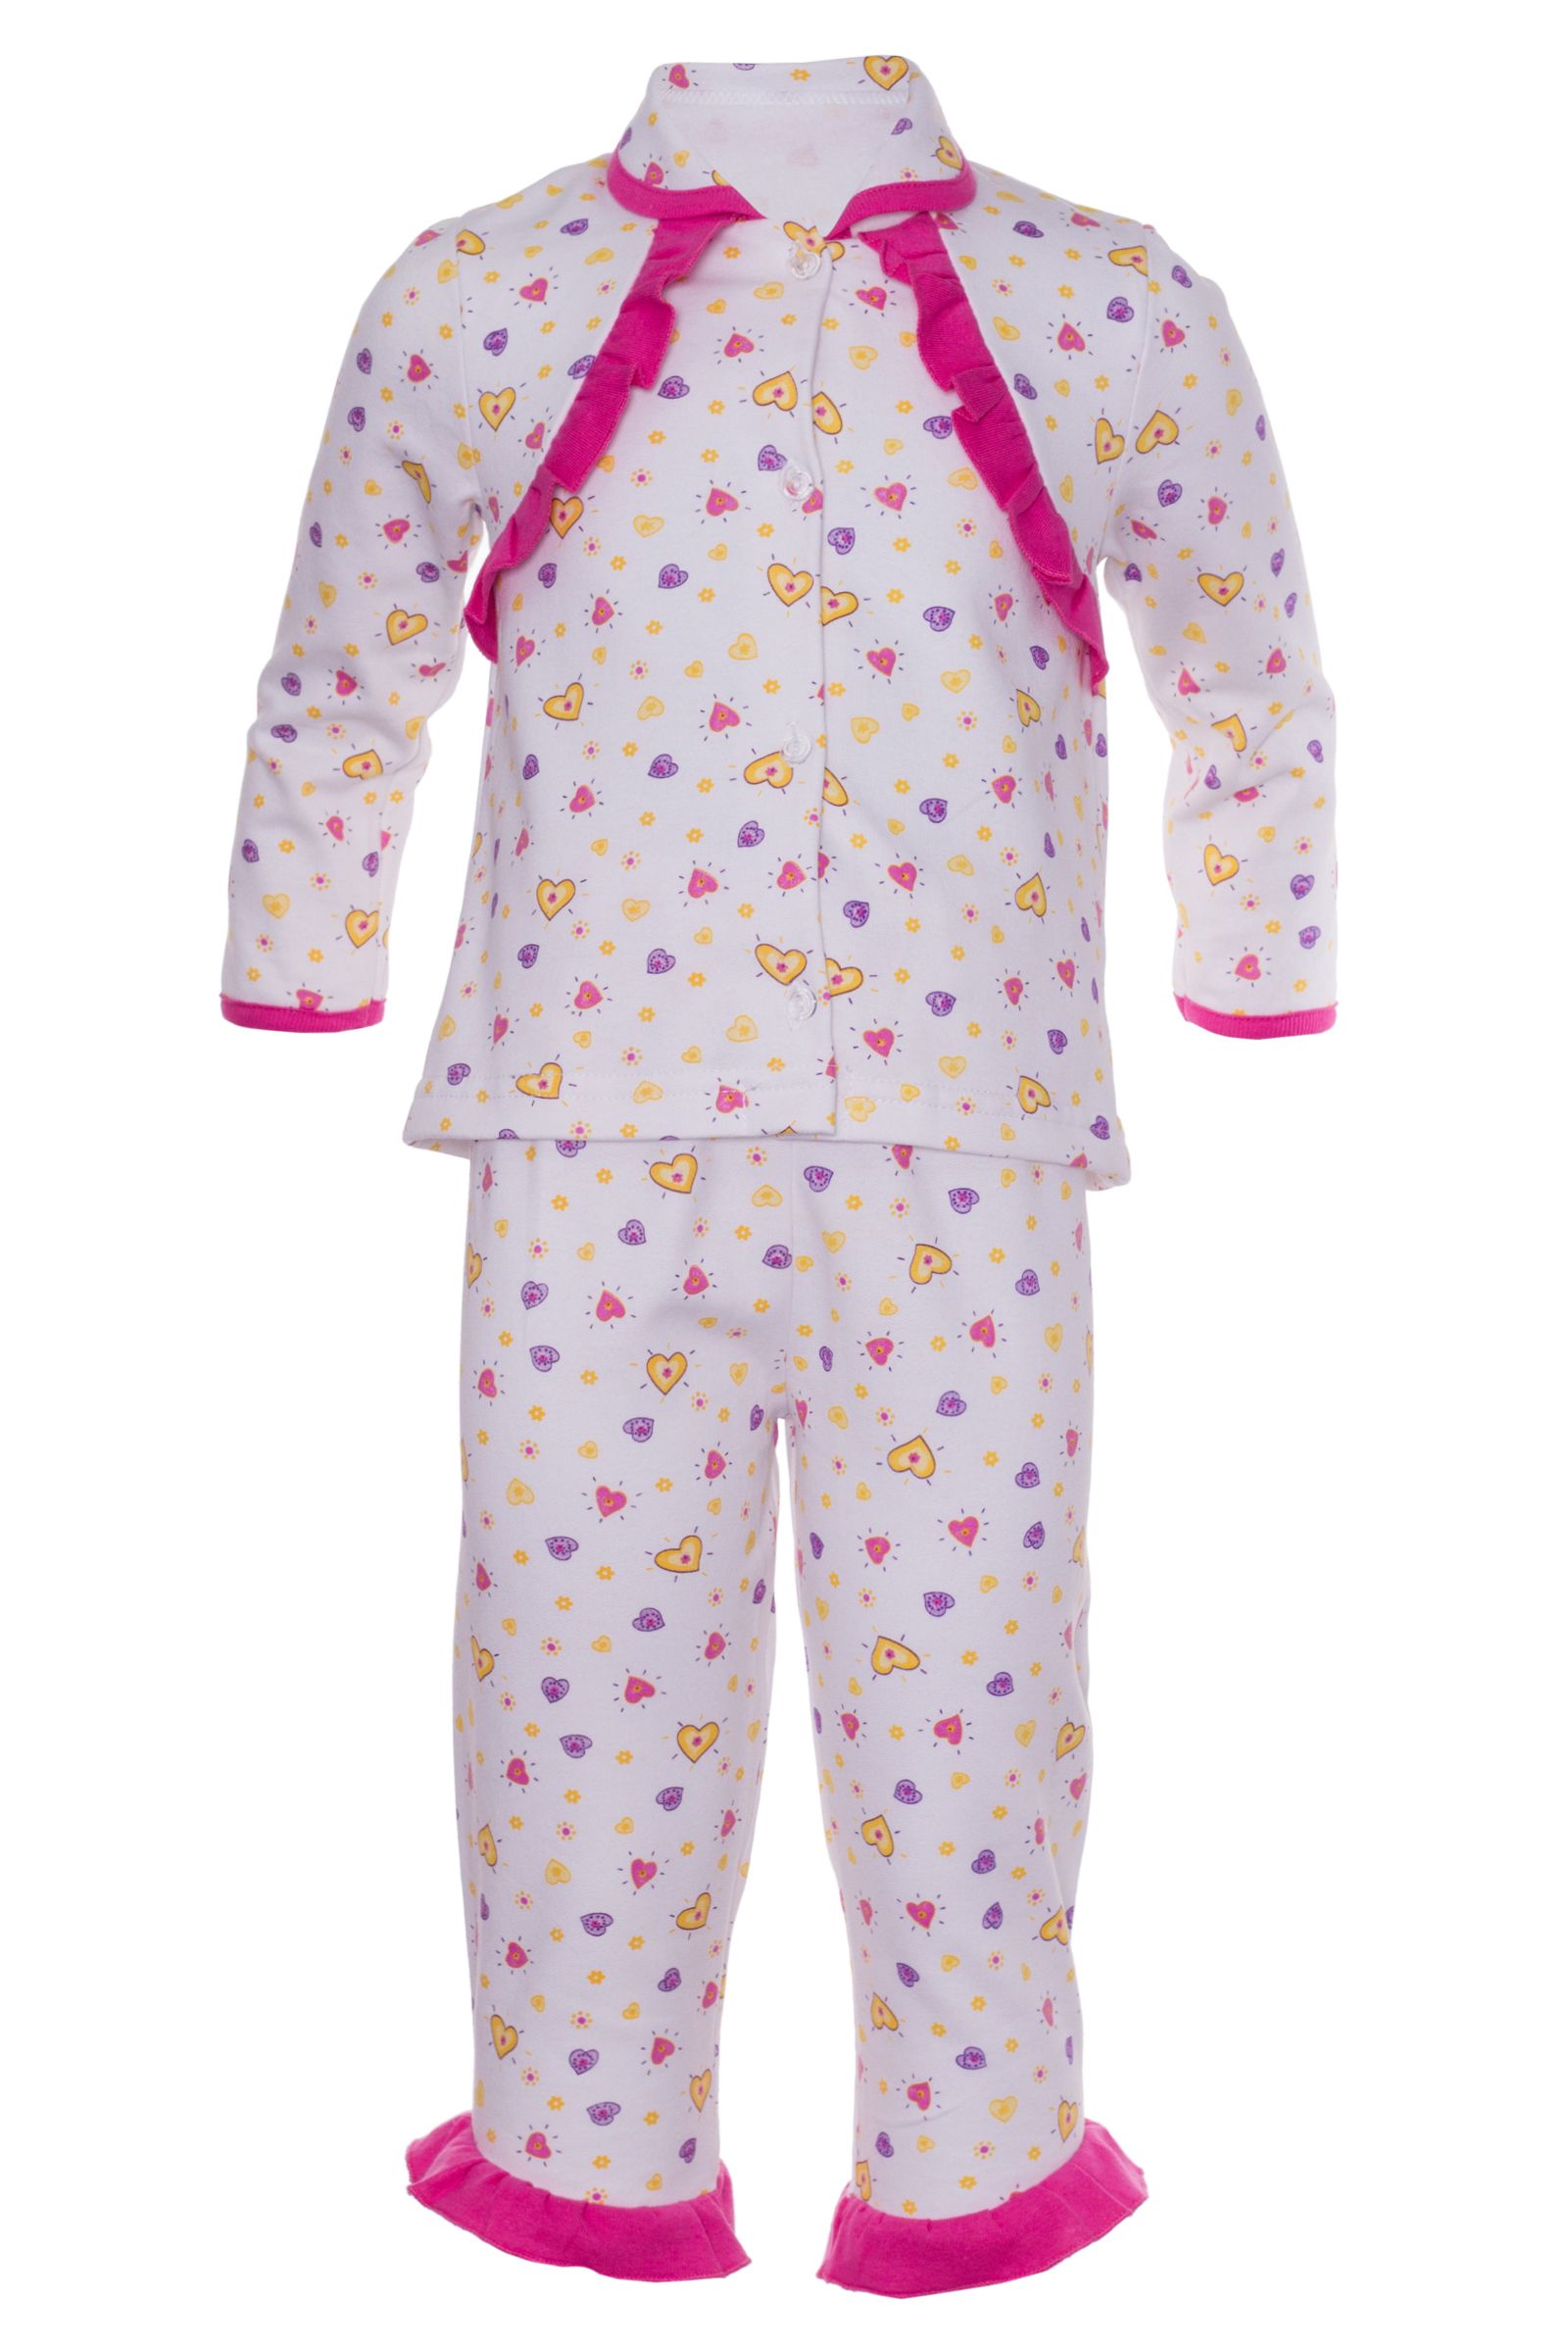 Пижама-ПЖ06-234 оптом от производителя детской одежды 'Алёна'